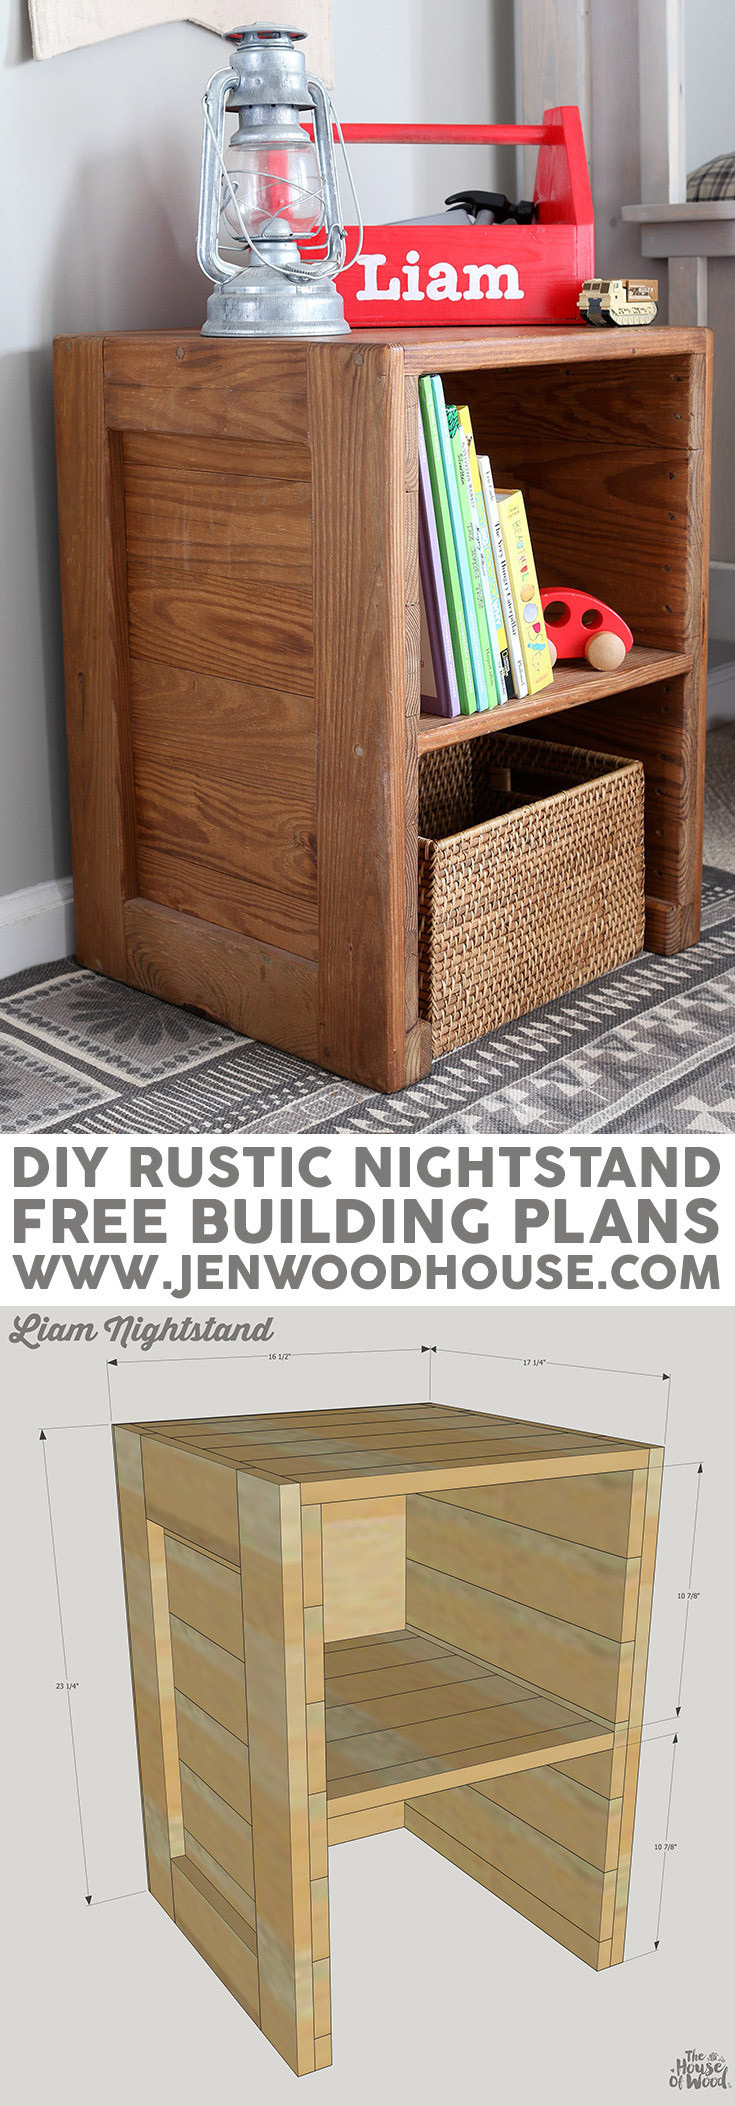 DIY Nightstands Plans
 Free Plans DIY Rustic Nightstand